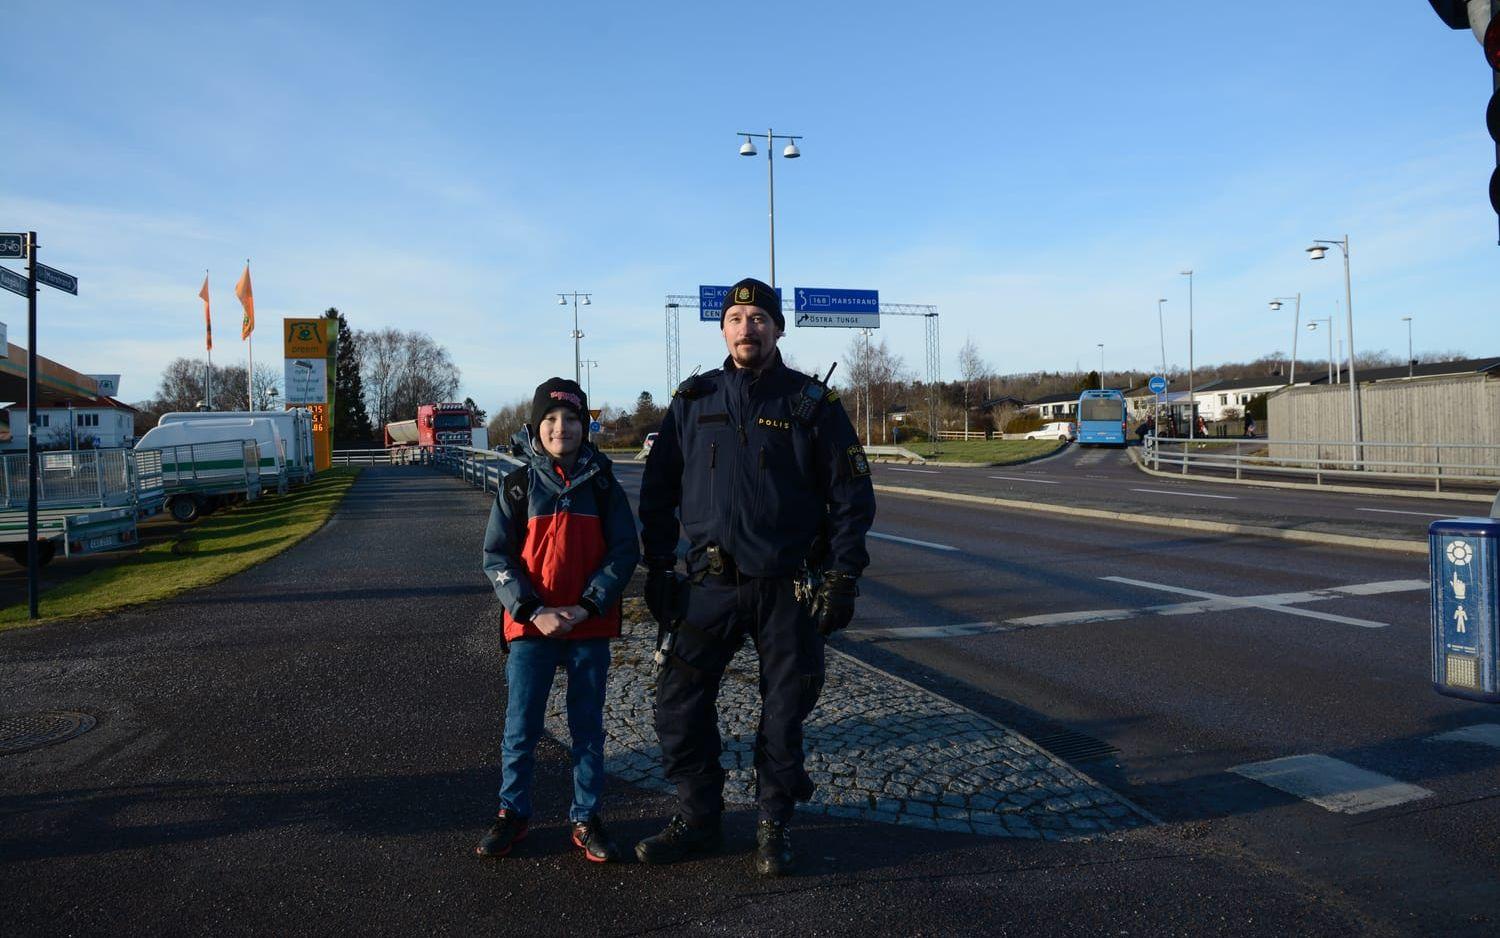 Polisinspektören Joakim Morin och hans kollegor var på plats vid rödljuset och hade tagit en bilist som kört mot rött. Bild: Karina Hansson